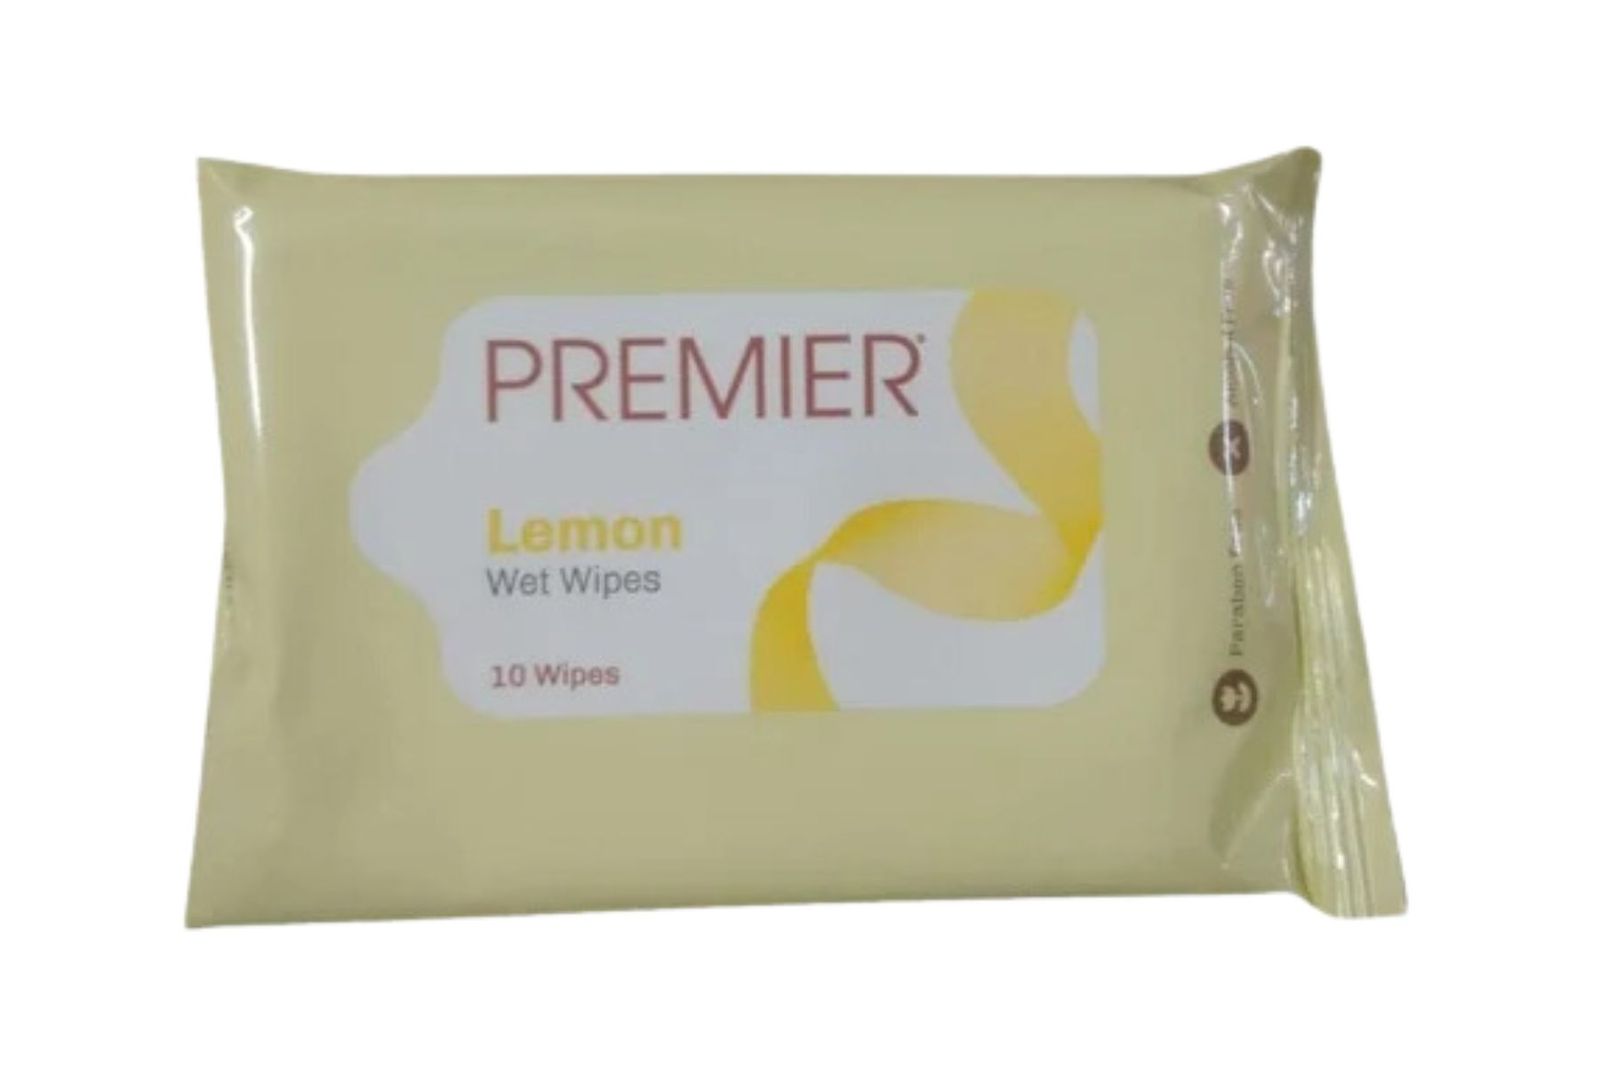 Premier Lemon Wet Wipes